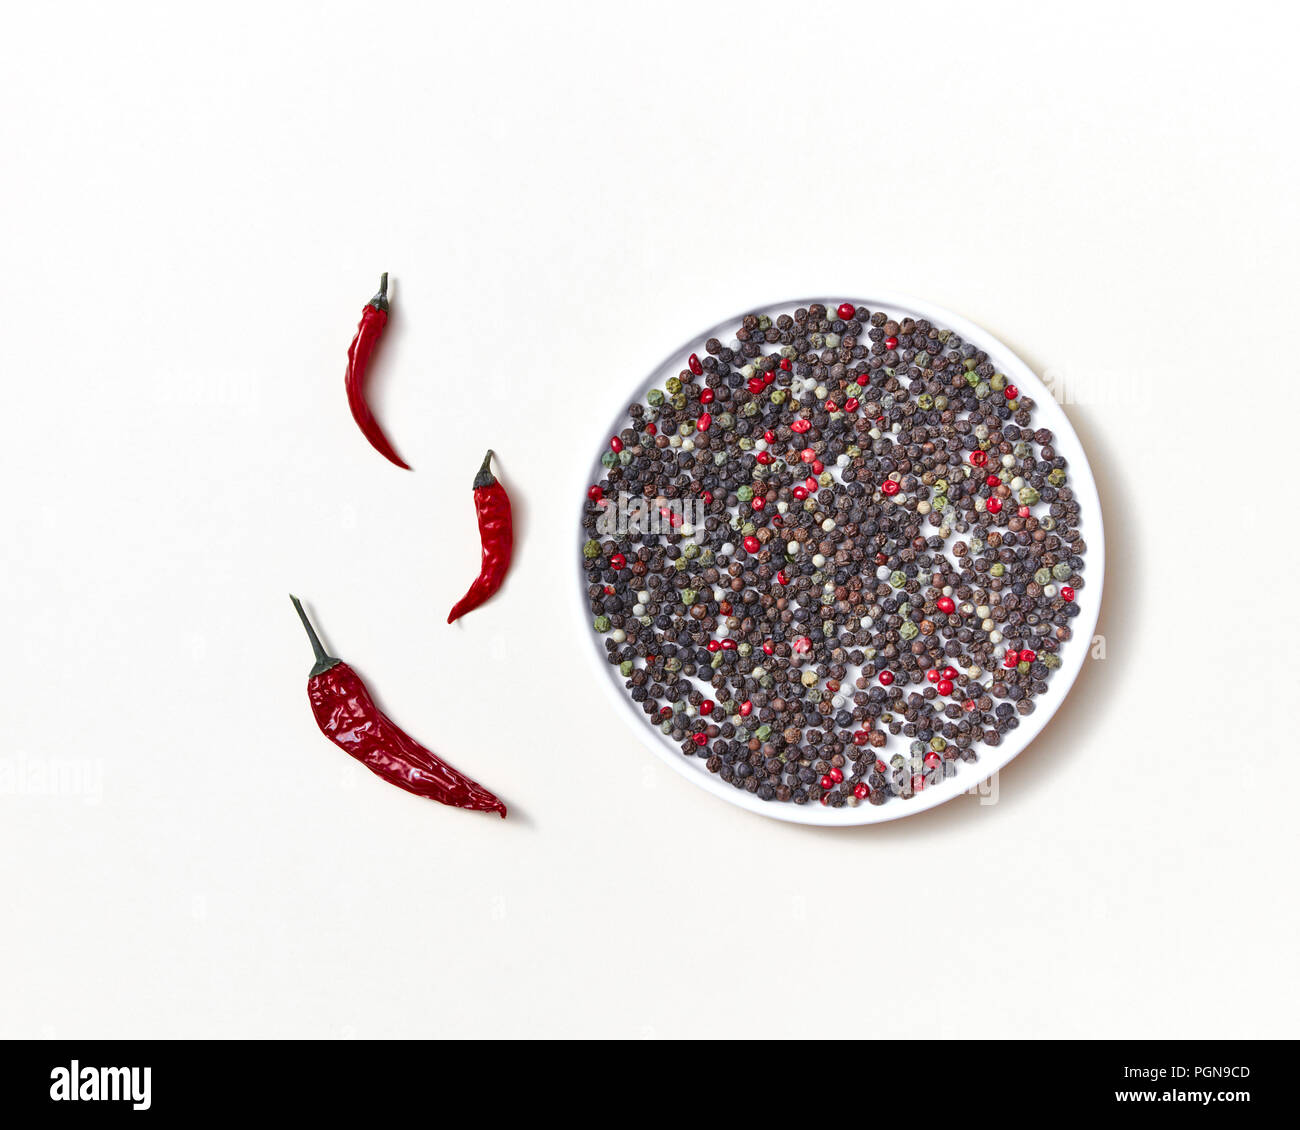 Rotes Rohr pods von red chili peppers mit Mix von verschiedenen Arten von Pfeffer auf einem weißen Teller auf einem weißen. Stockfoto